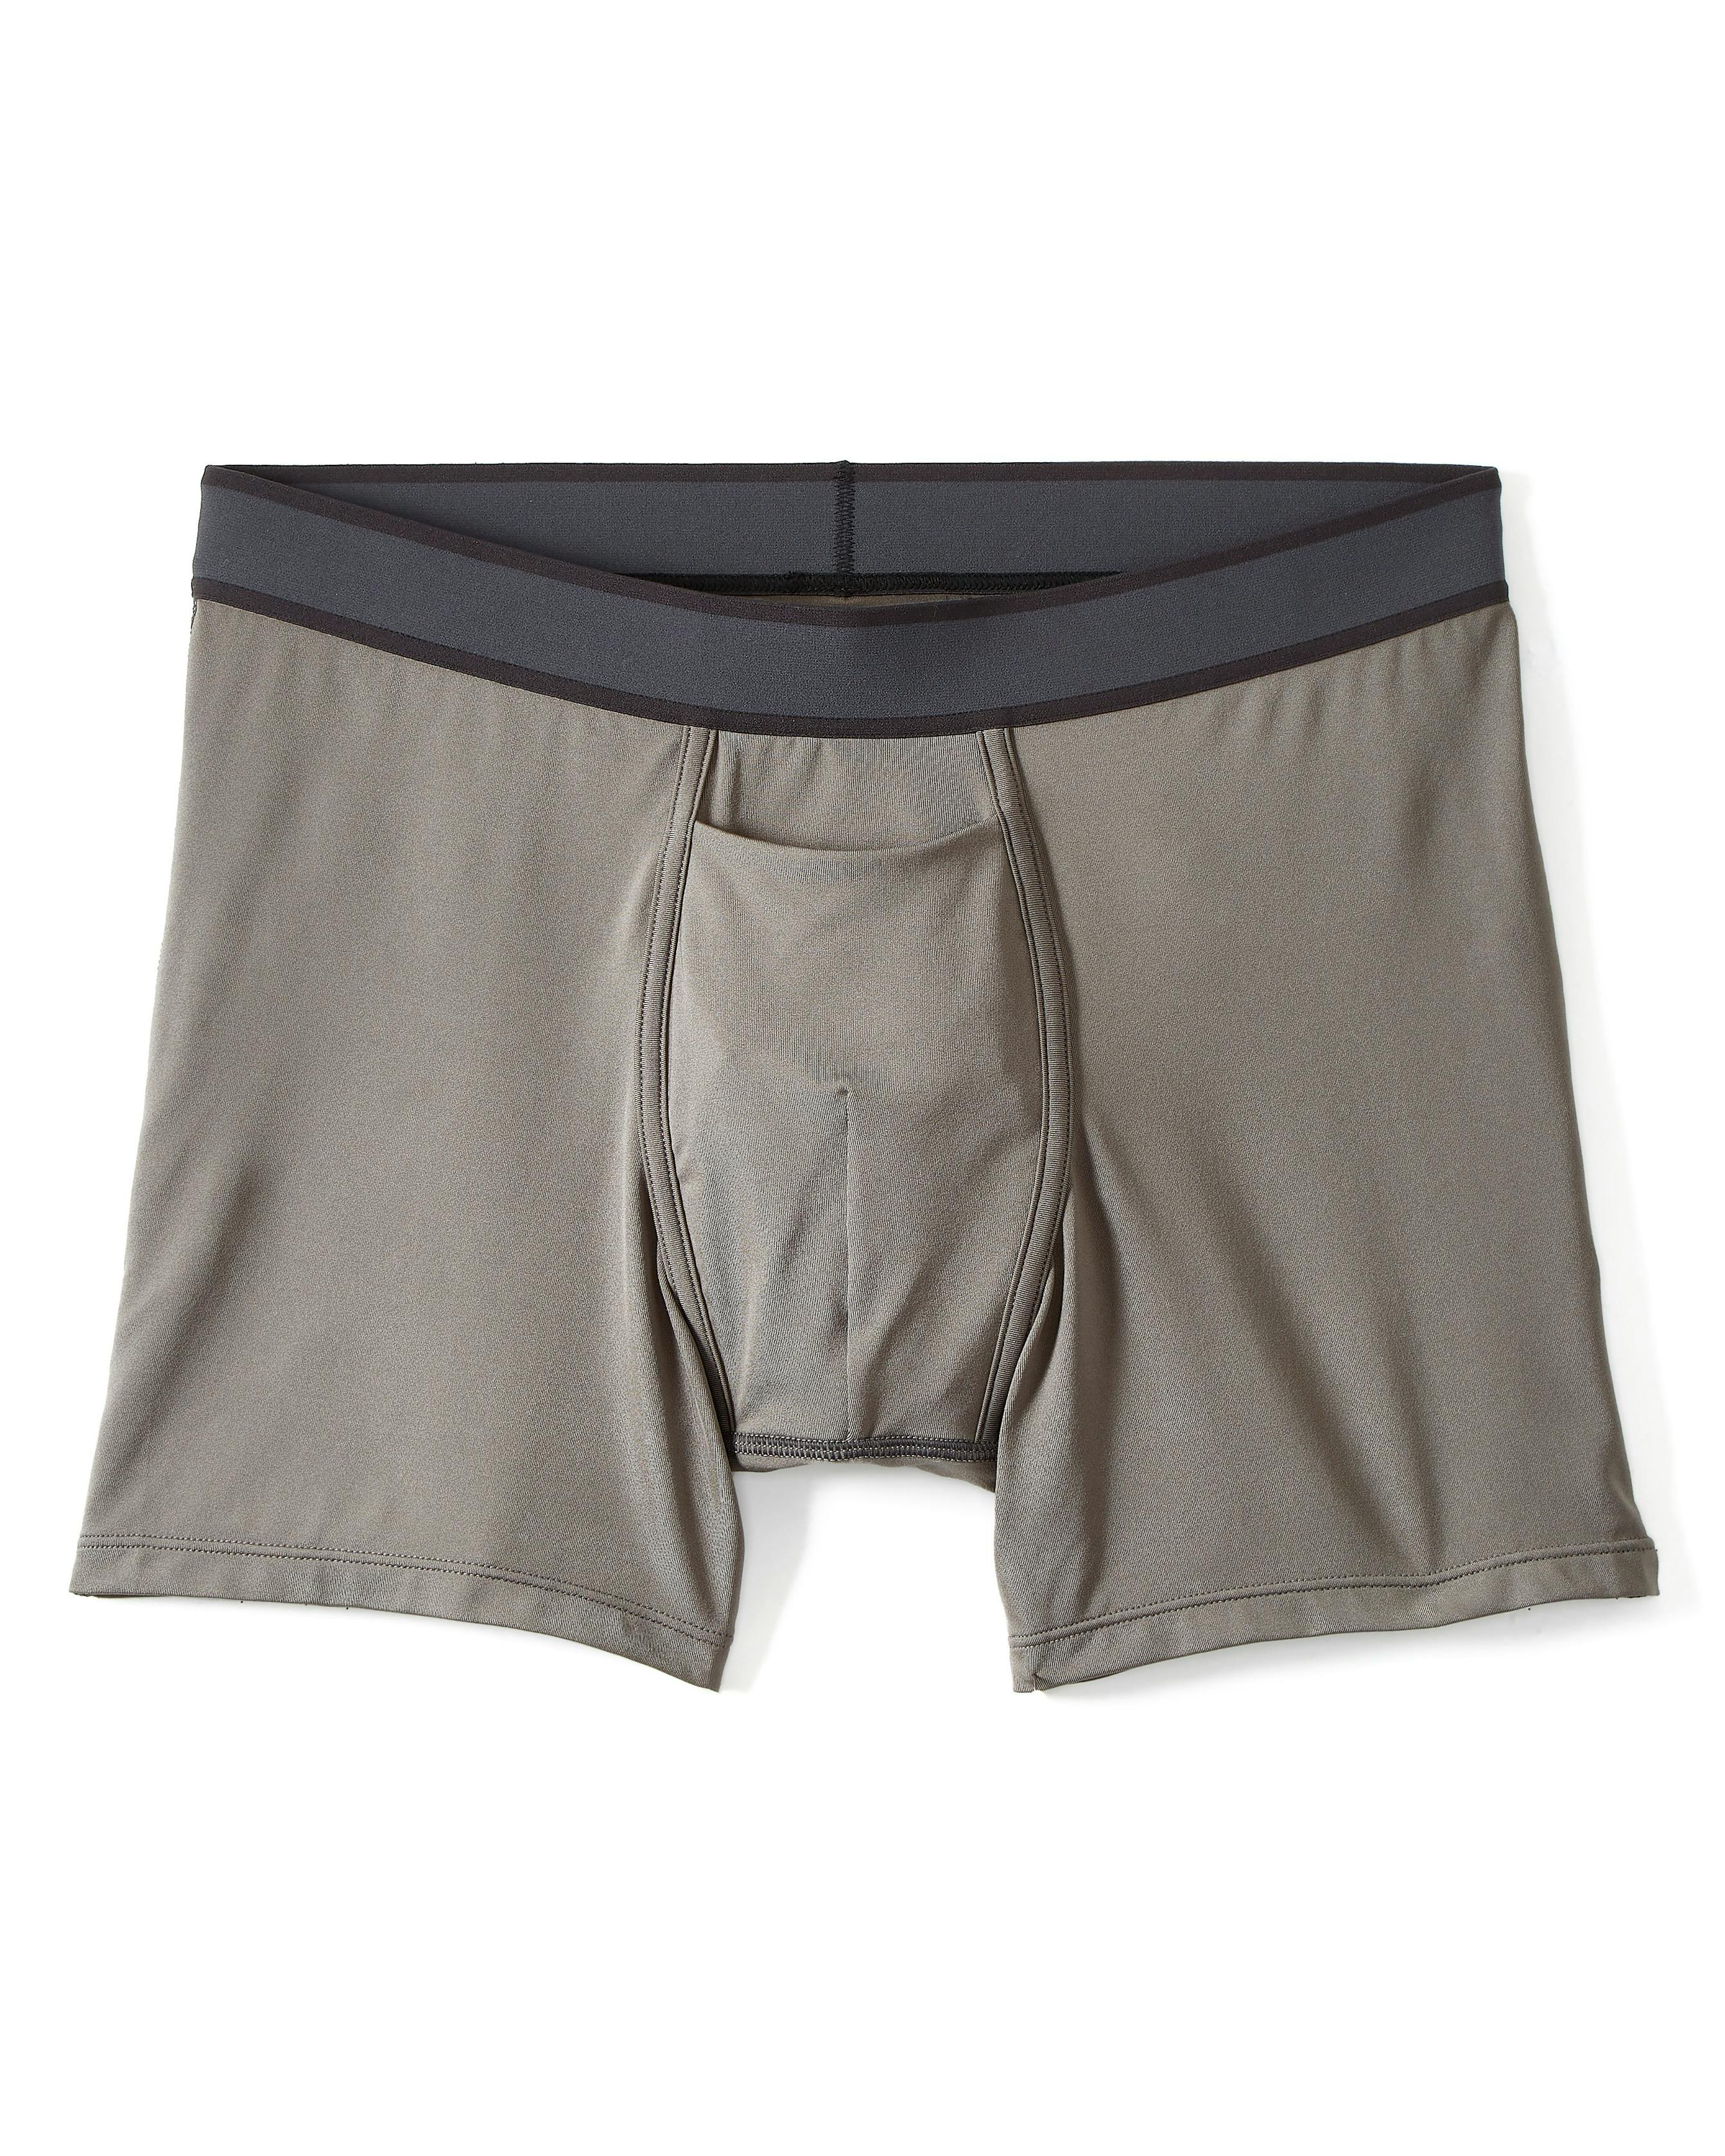 Proof Interval Boxer Briefs - 5 - Grey, Underwear